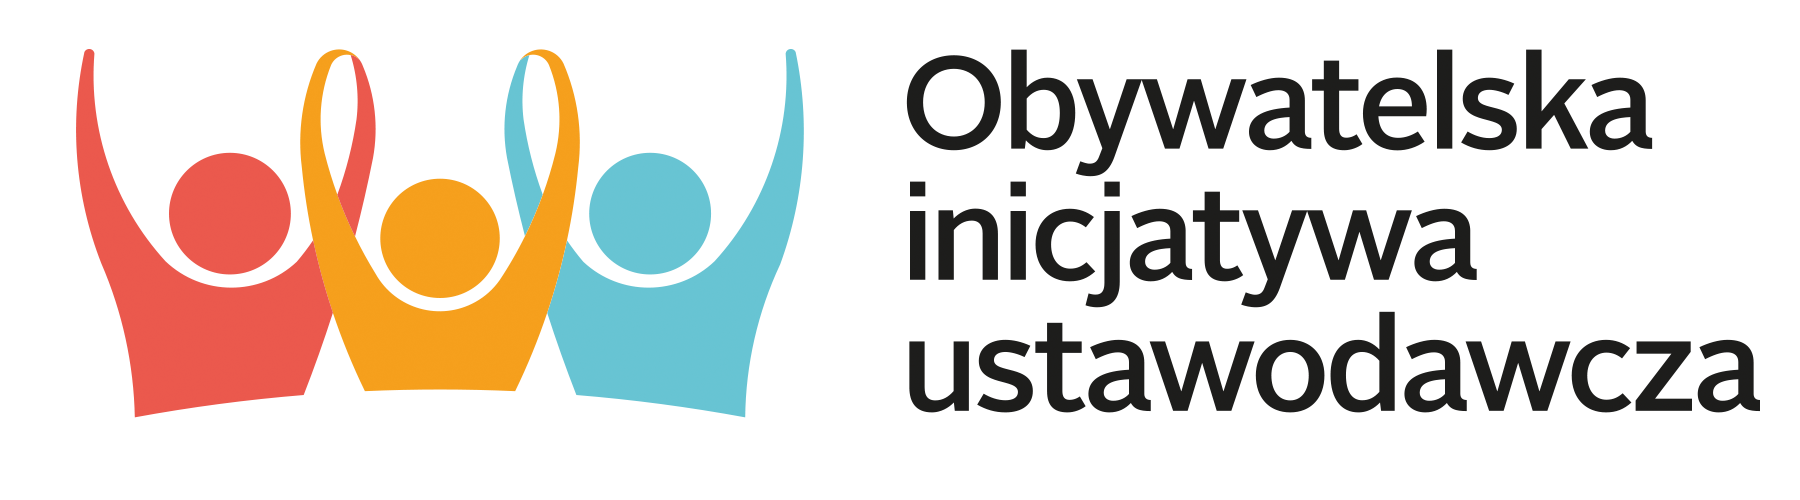 logo_obywatelska-inicjatywa-ustawodawcza_rgb